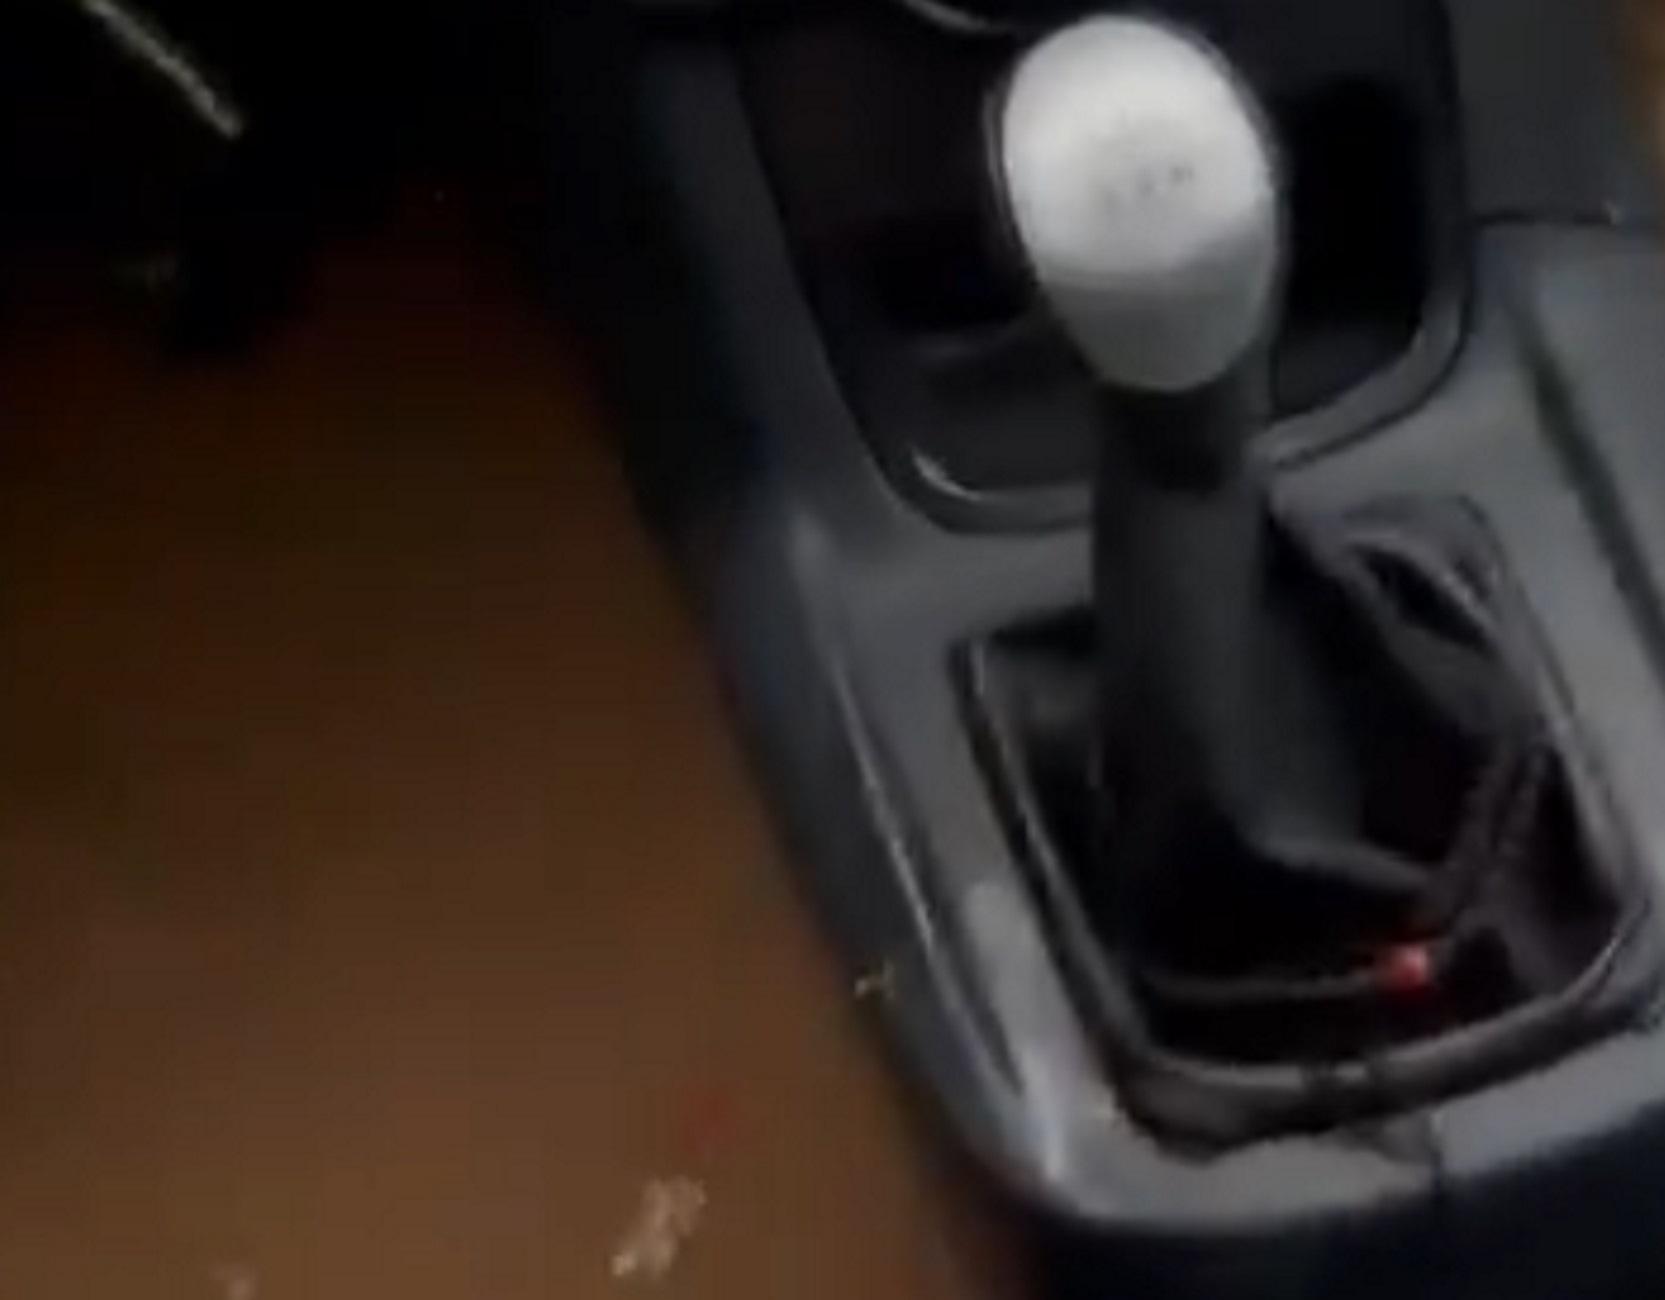 Καιρός – Χαλκιδική: Τρομακτικό βίντεο με τη στιγμή που χείμαρρος μπαίνει σε εν κινήσει αυτοκίνητο